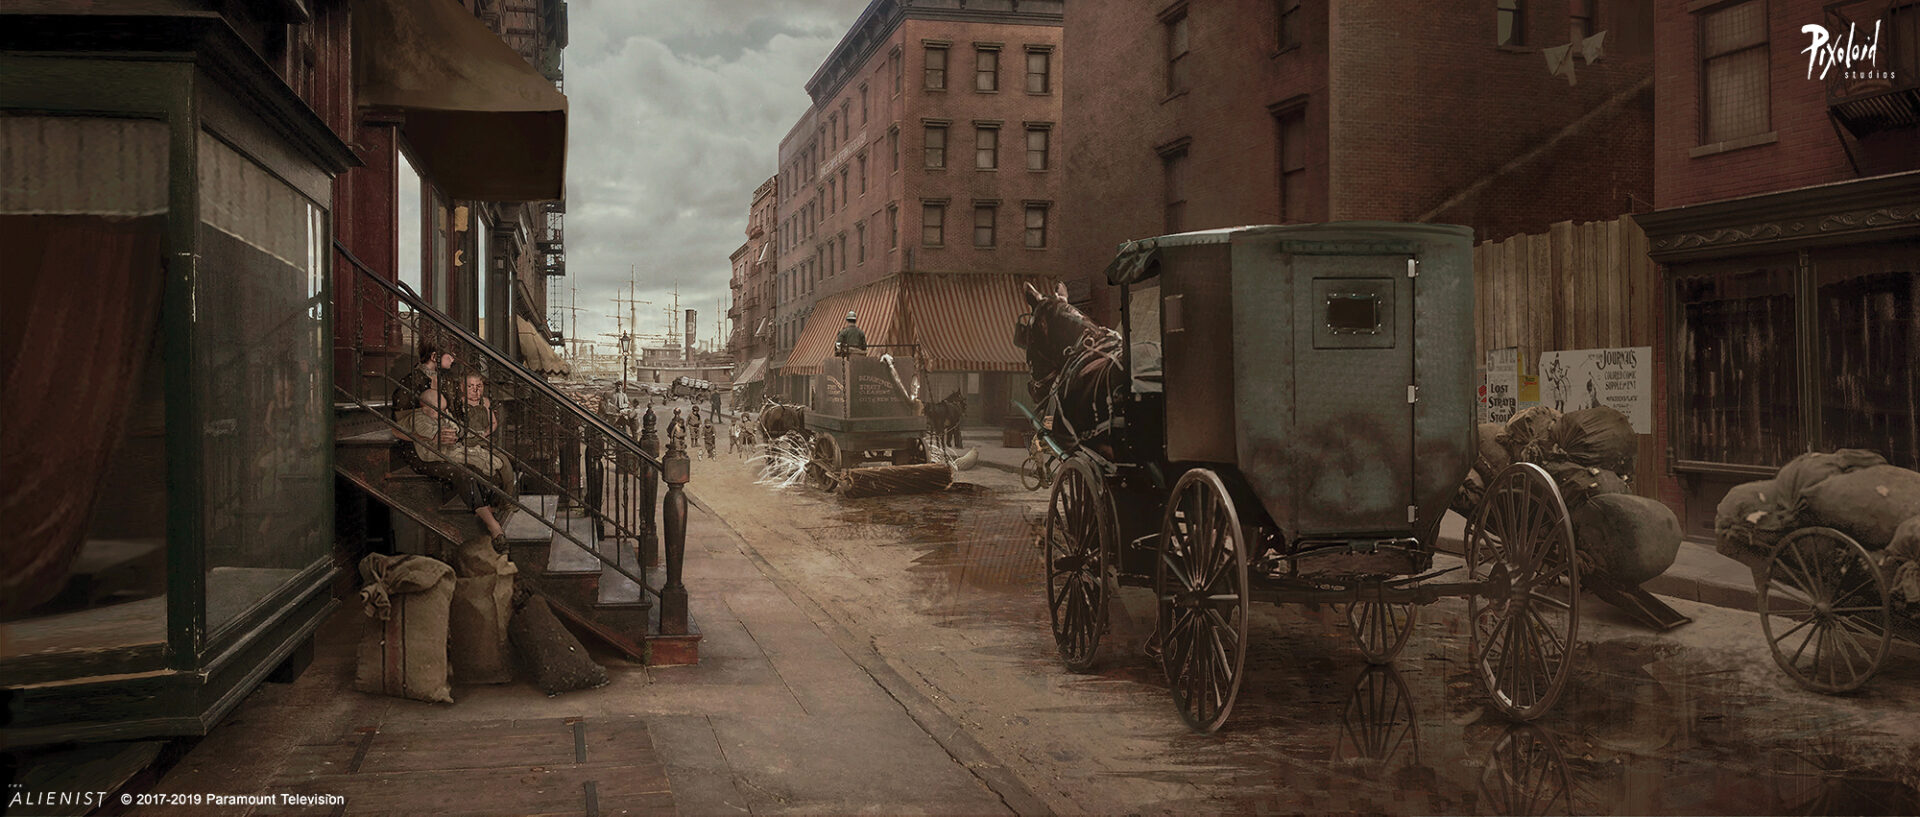 1800s New York street, keyframe Concept art for The Alienist